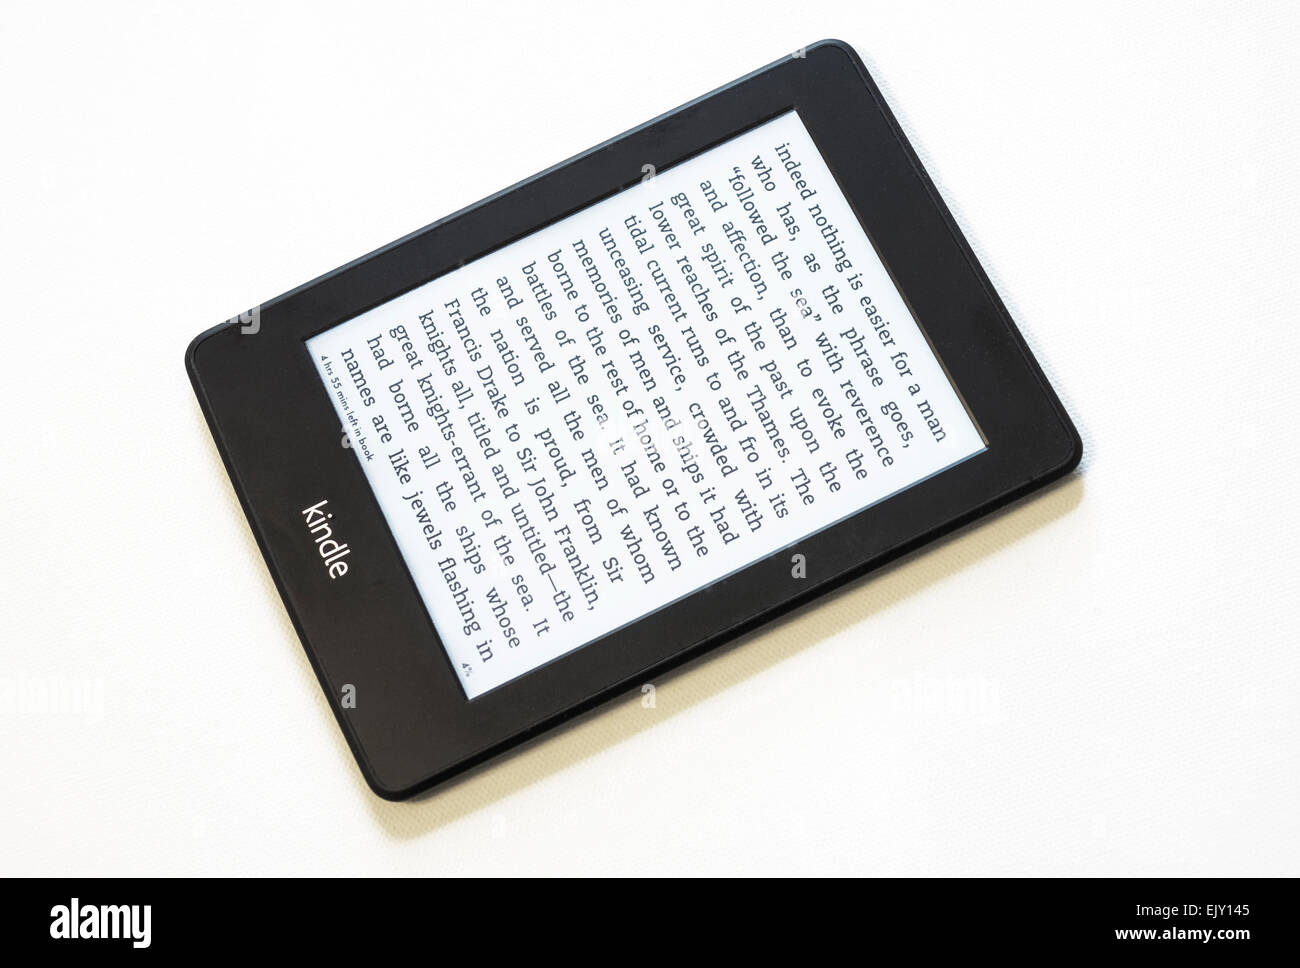 Early Black Friday : la liseuse  Kindle Paperwhite est à